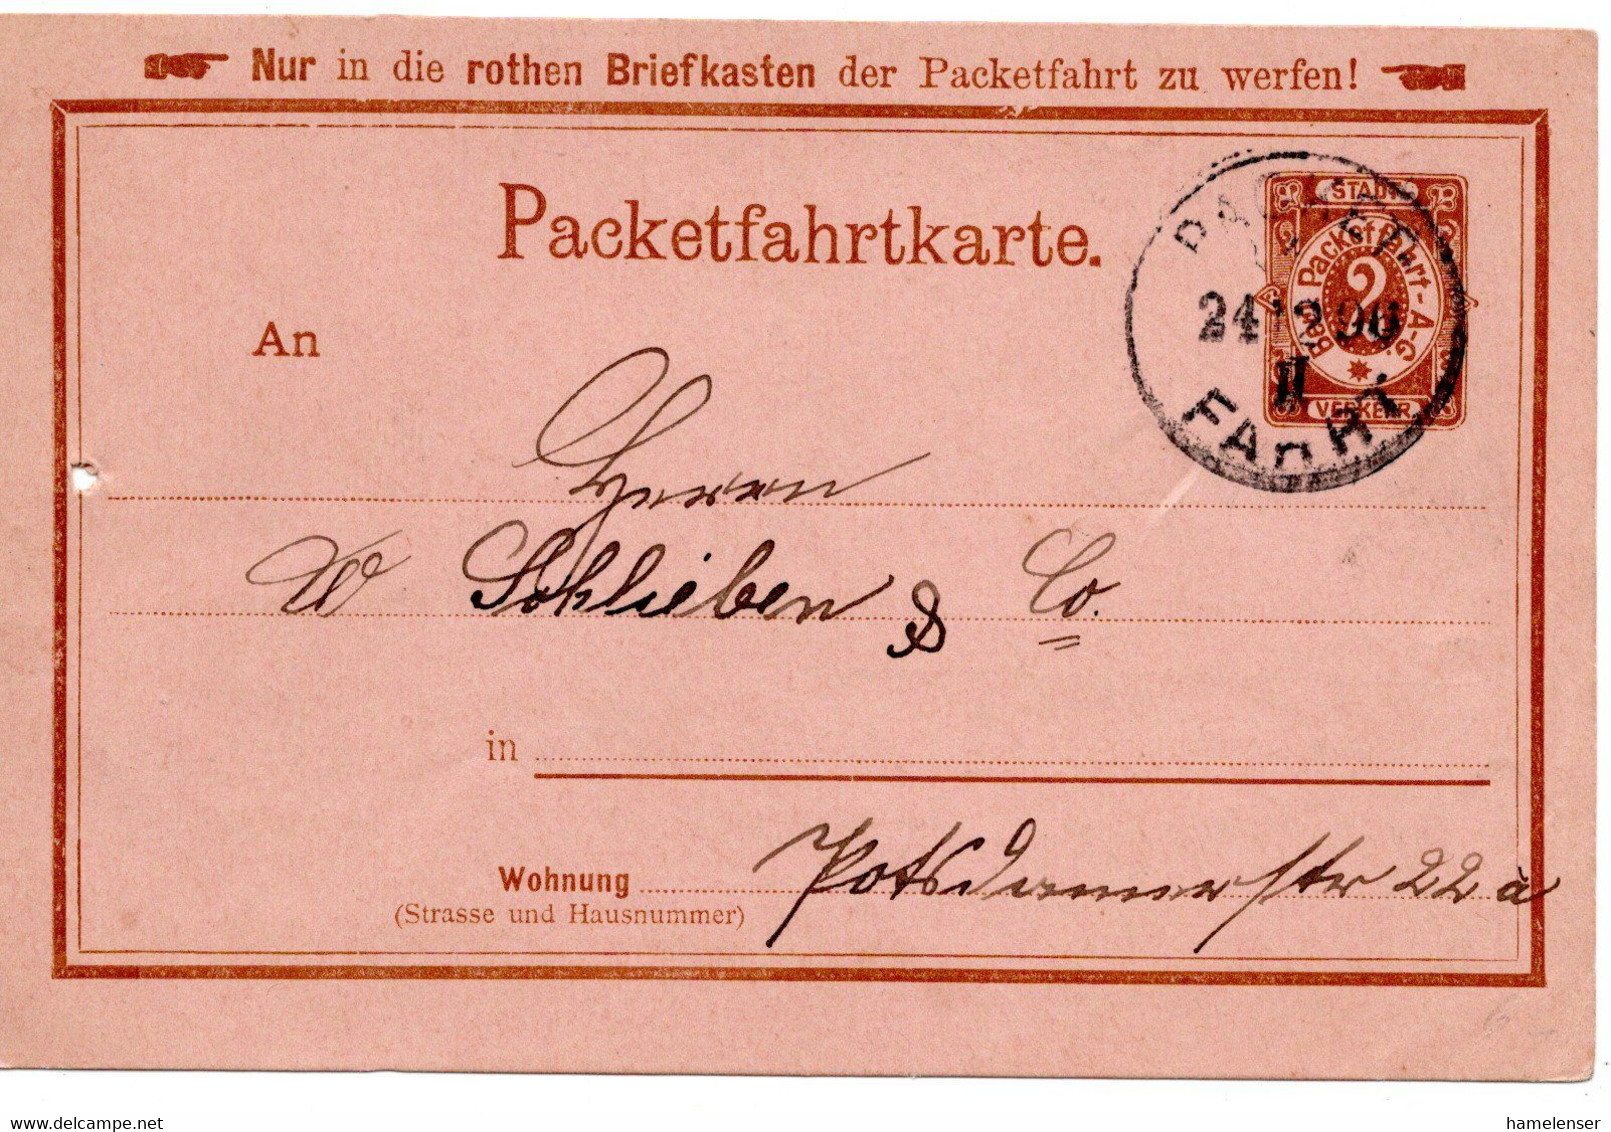 55430 - Deutsches Reich / Berliner Packetfahrt - 1896 - 2Pfg. GAKte. PACKET FAHRT - Private & Lokale Post